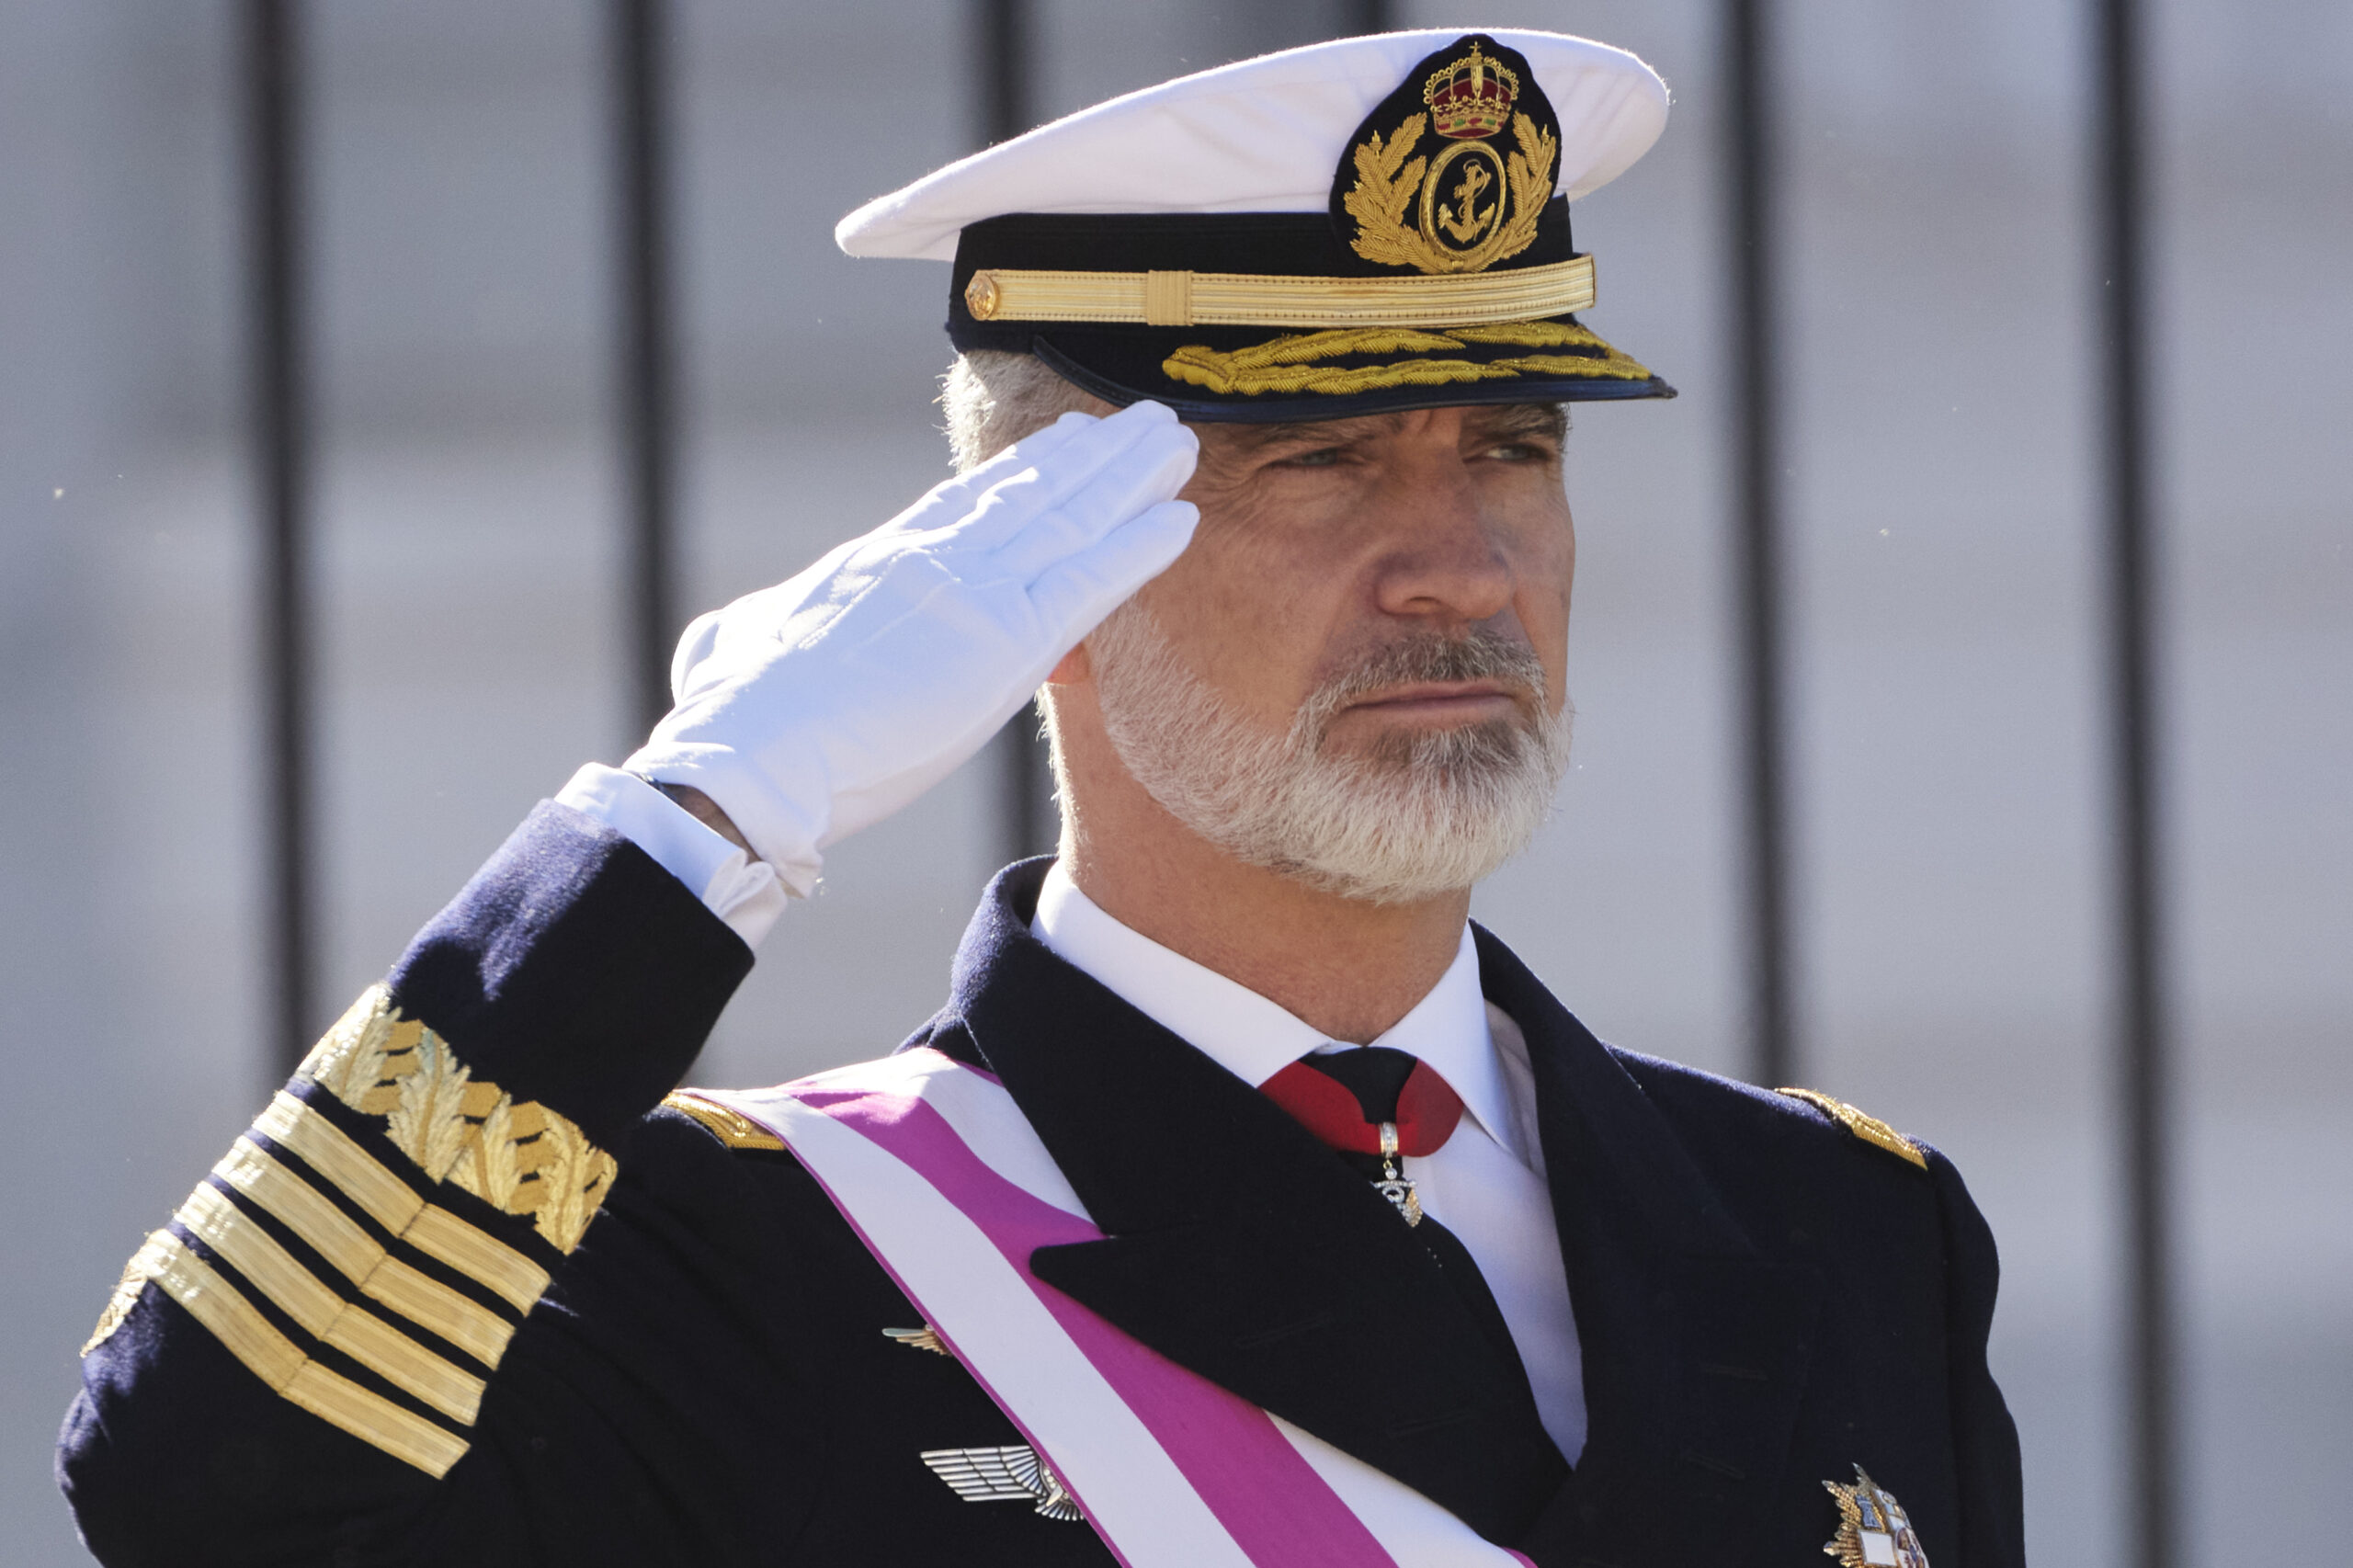 20minutos publica un almibarado artículo a favor de la monarquía con motivo de la Pascua Militar